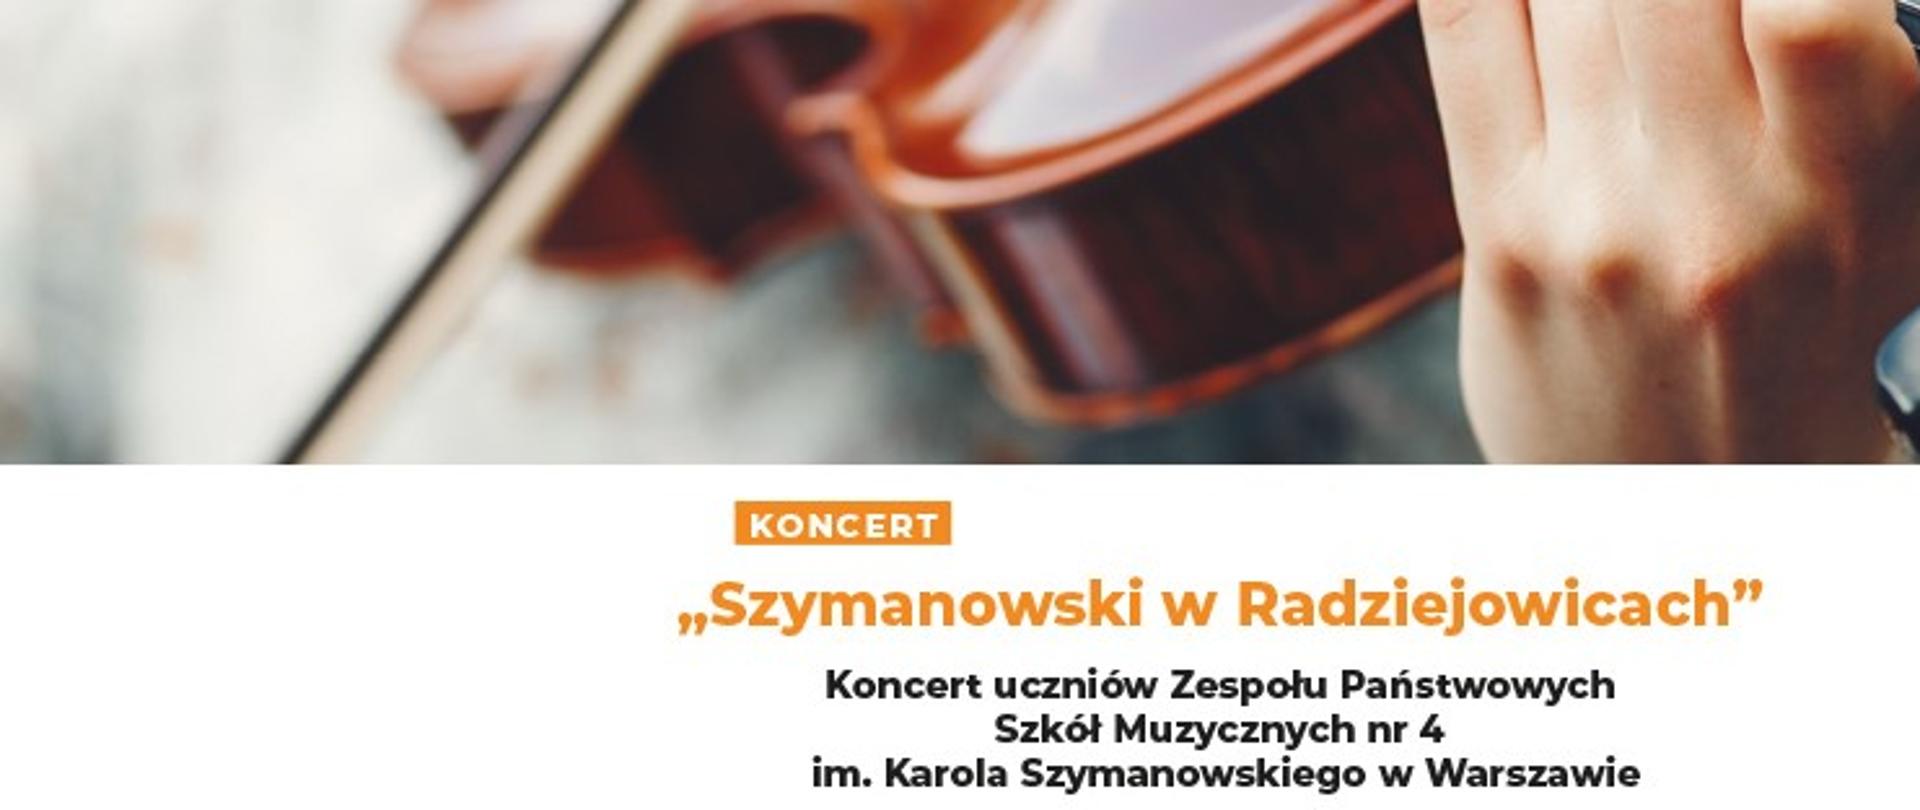 Baner przedstawia napis Szymanowski w Radziejowicach - koncert uczniów ZPSM nr 4 im. K. Szymanowskiego z ilustracją fragmentu skrzypiec z ręką muzyka.